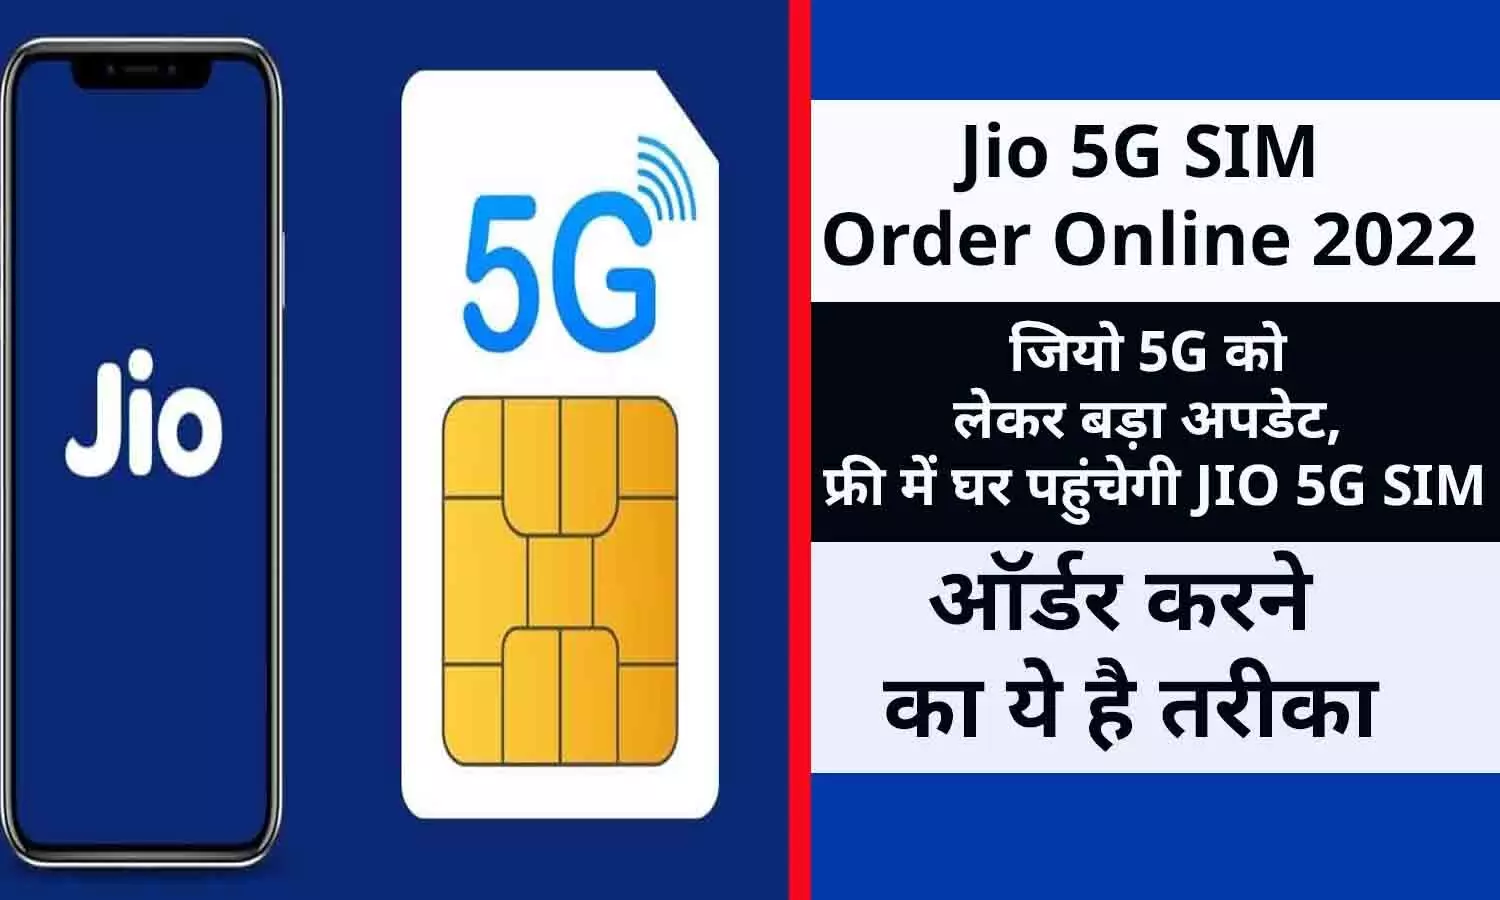 Jio 5G SIM Order Online In Hindi 2022: जियो 5G को लेकर बड़ा अपडेट, फ्री में घर पहुंचेगी JIO 5G SIM, ऑर्डर करने का ये है तरीका